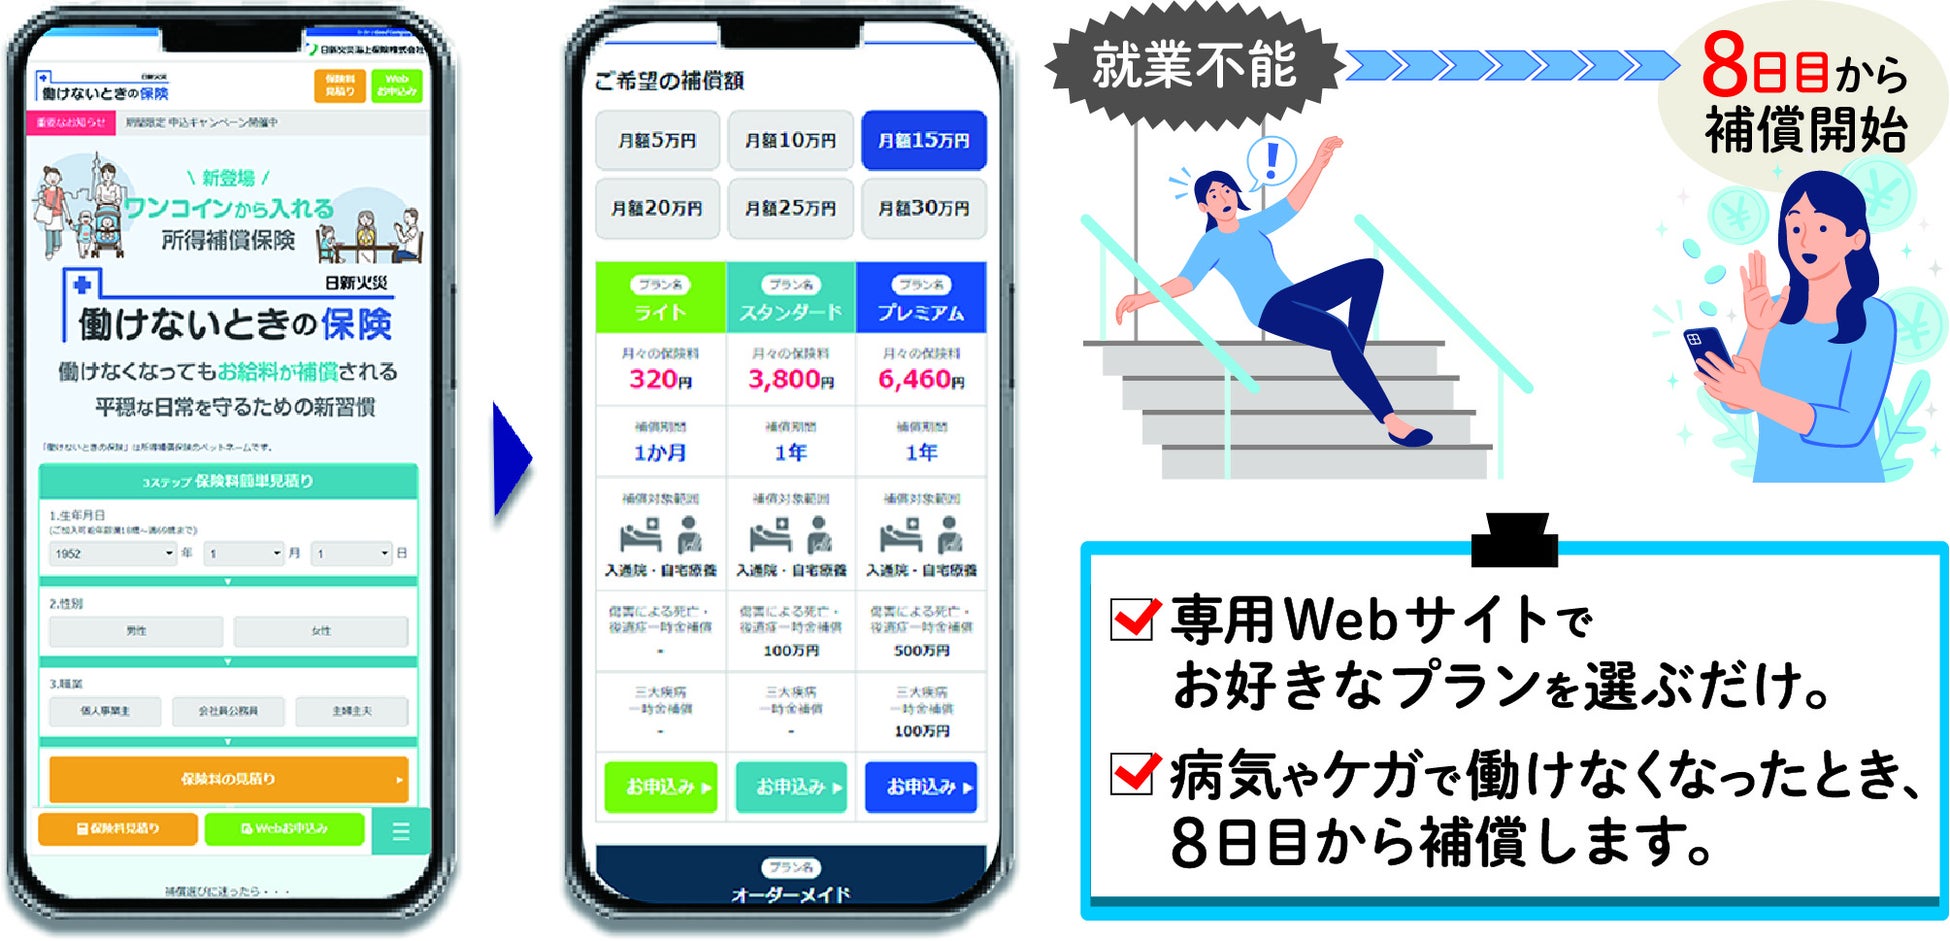 デジタル保険代理店「コのほけん！」は、株式会社Starbankが主催する「TALENT BANK」の公式アンバサダーを務める菊川怜さんの肖像を用いたプロモーション活動を開始いたします。